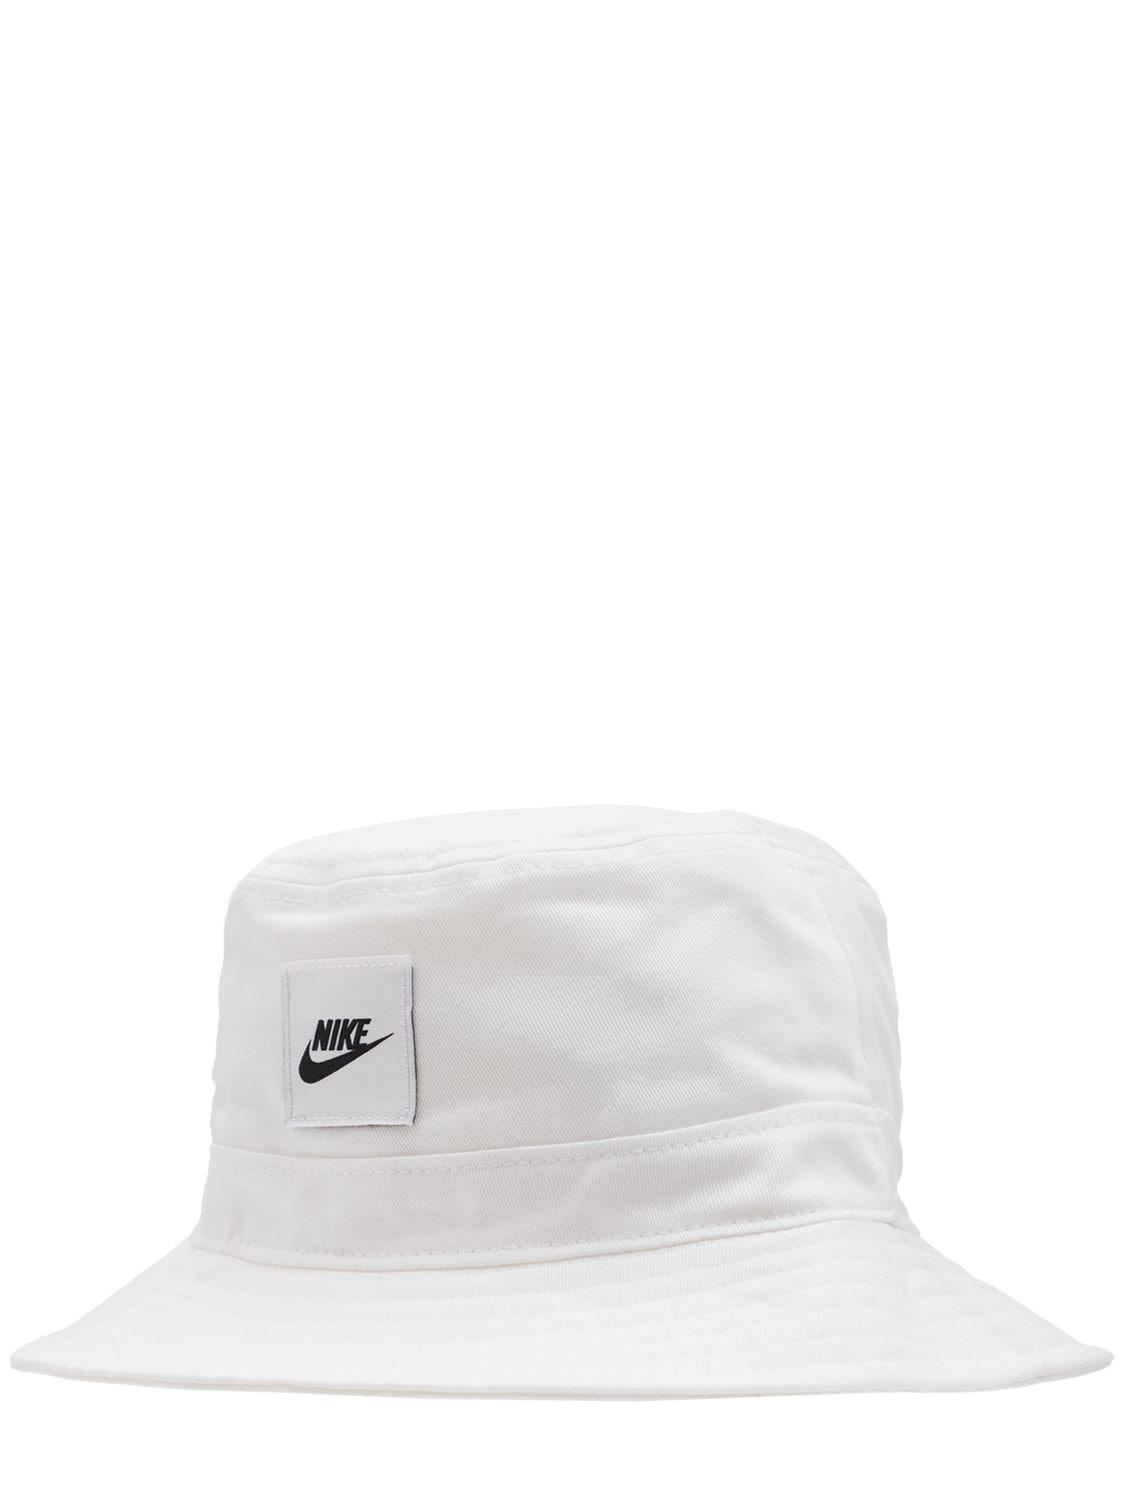 Nike Bucket Hat in White | Lyst